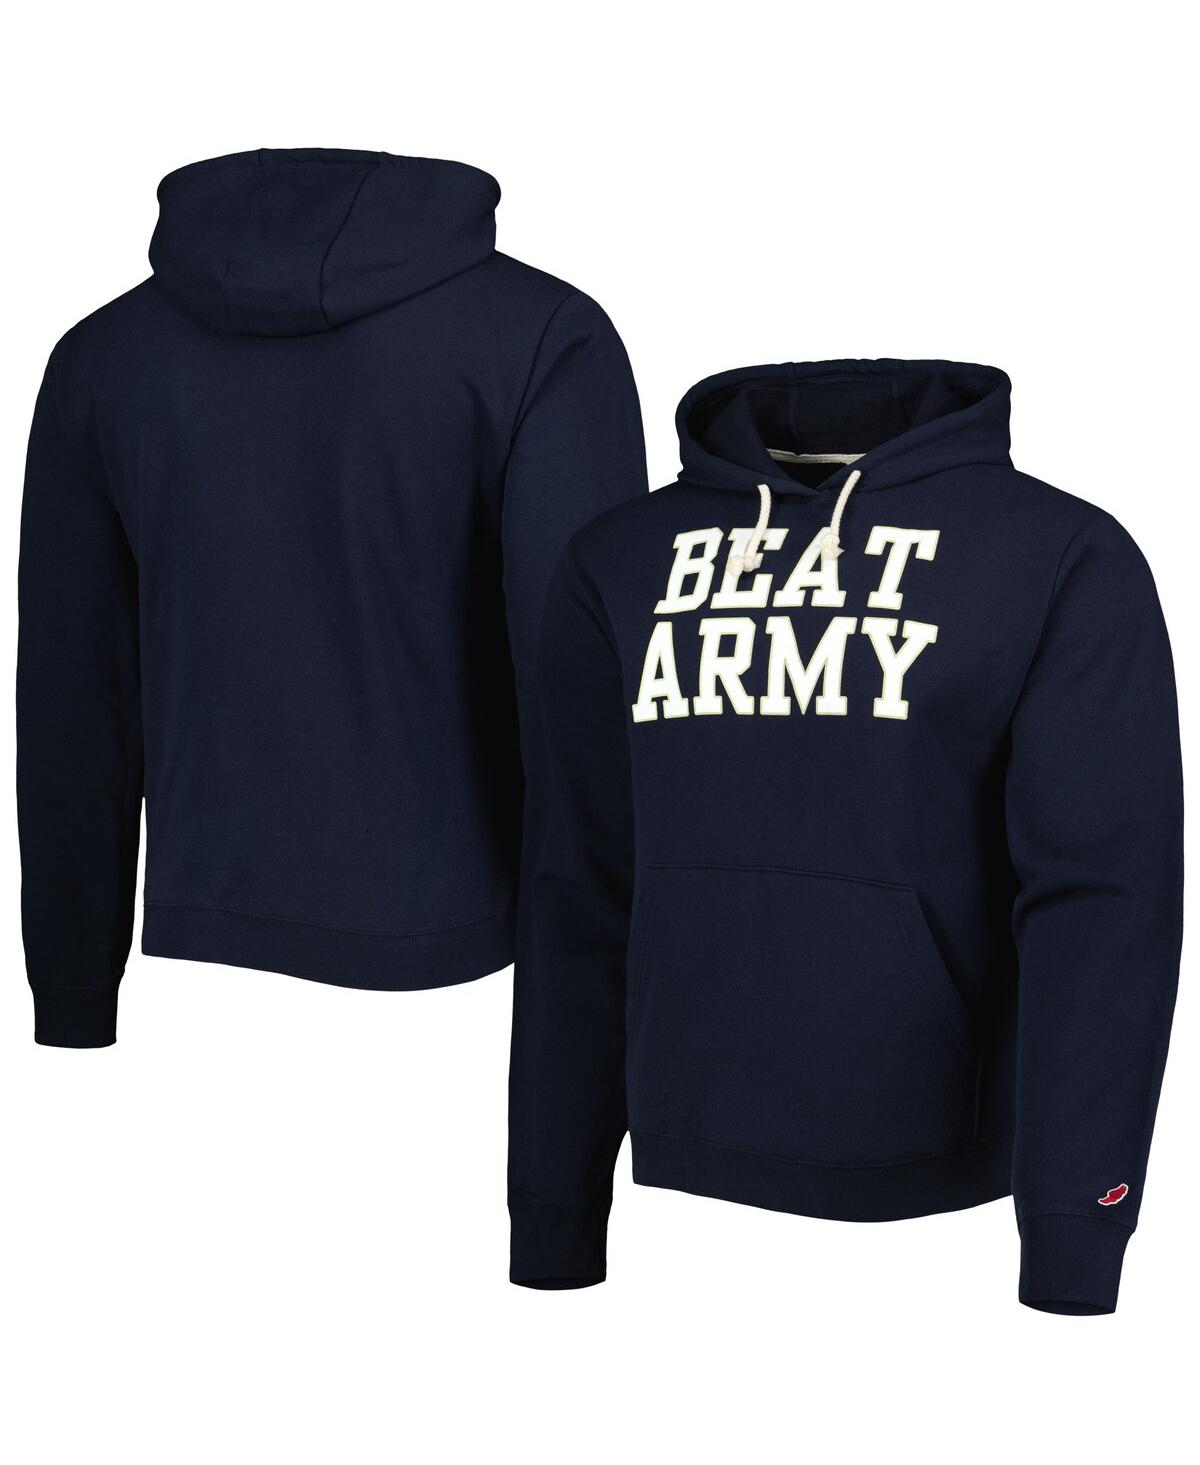 Men's League Collegiate Wear Navy Navy Midshipmen Local Essential Fleece Pullover Hoodie - Navy